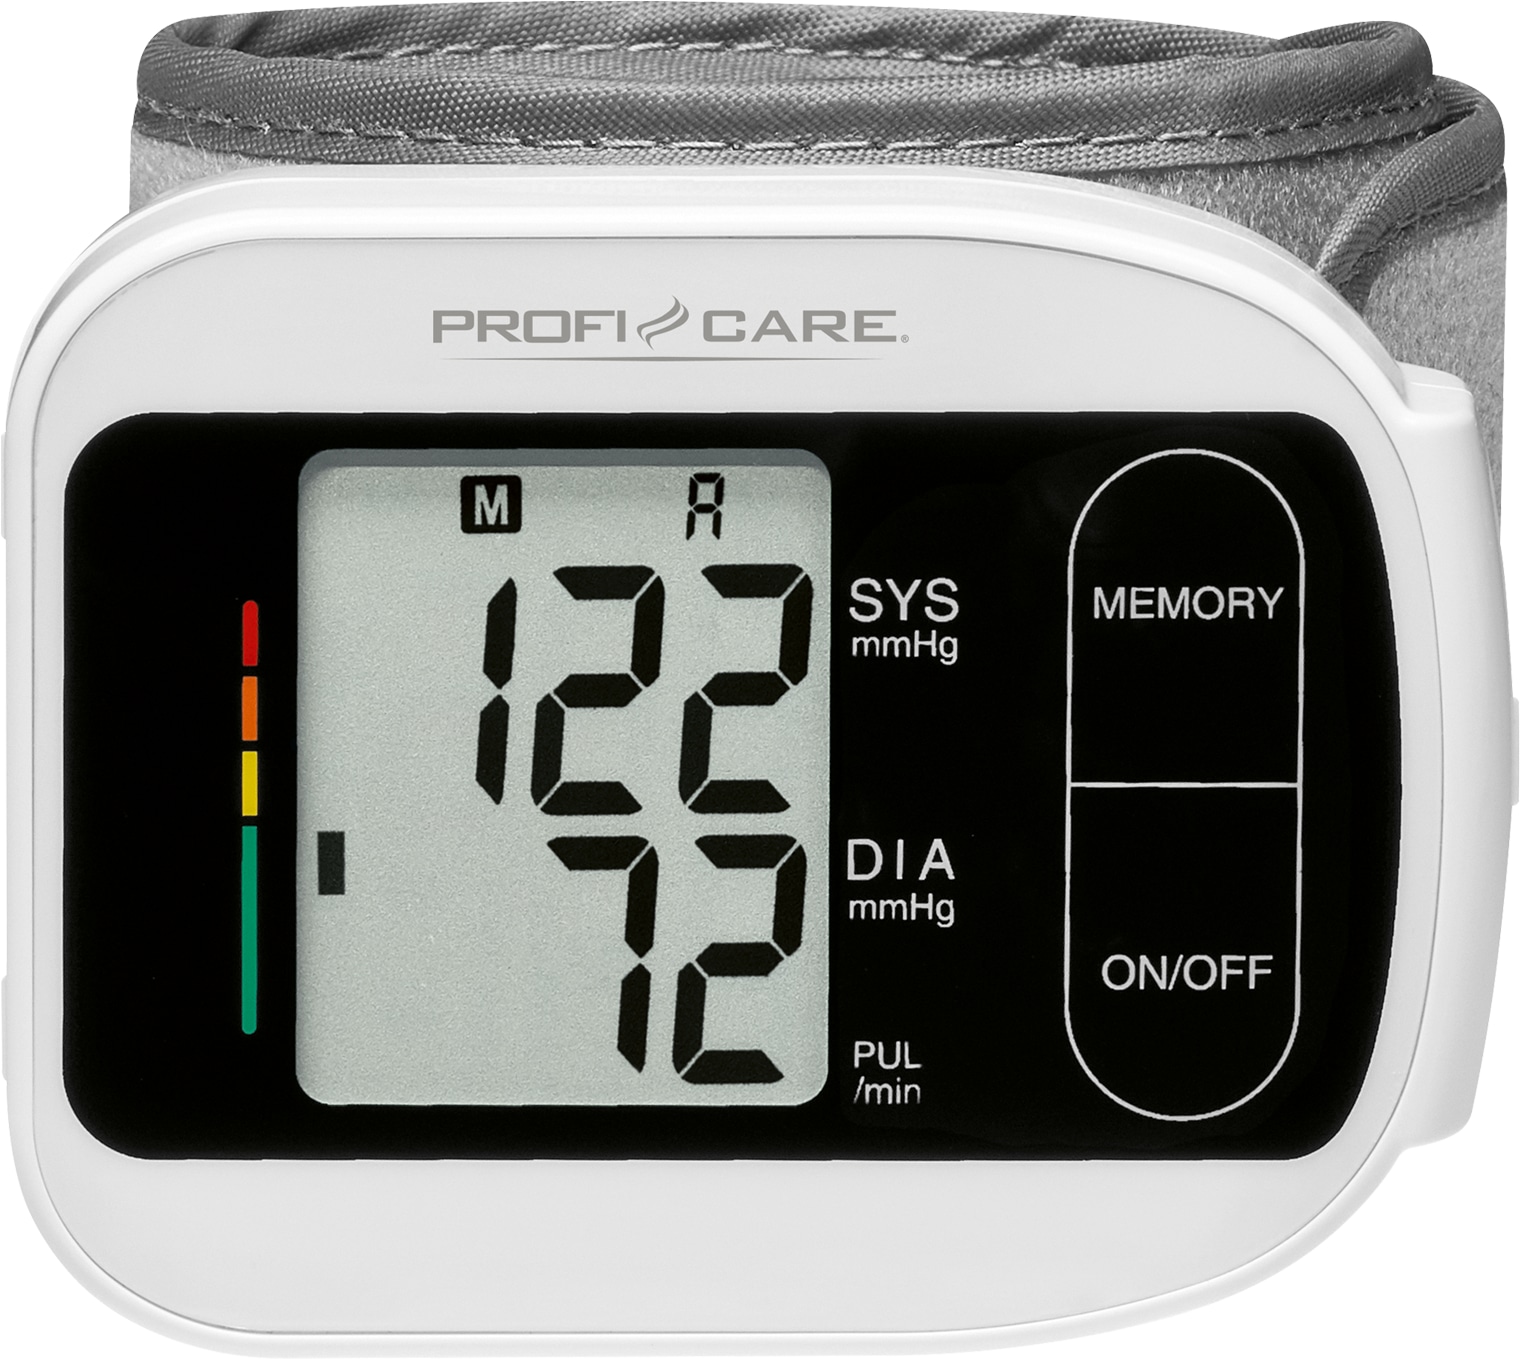 PROFI CARE Blutdruckmessgerät PC-BMG 3018, weiß